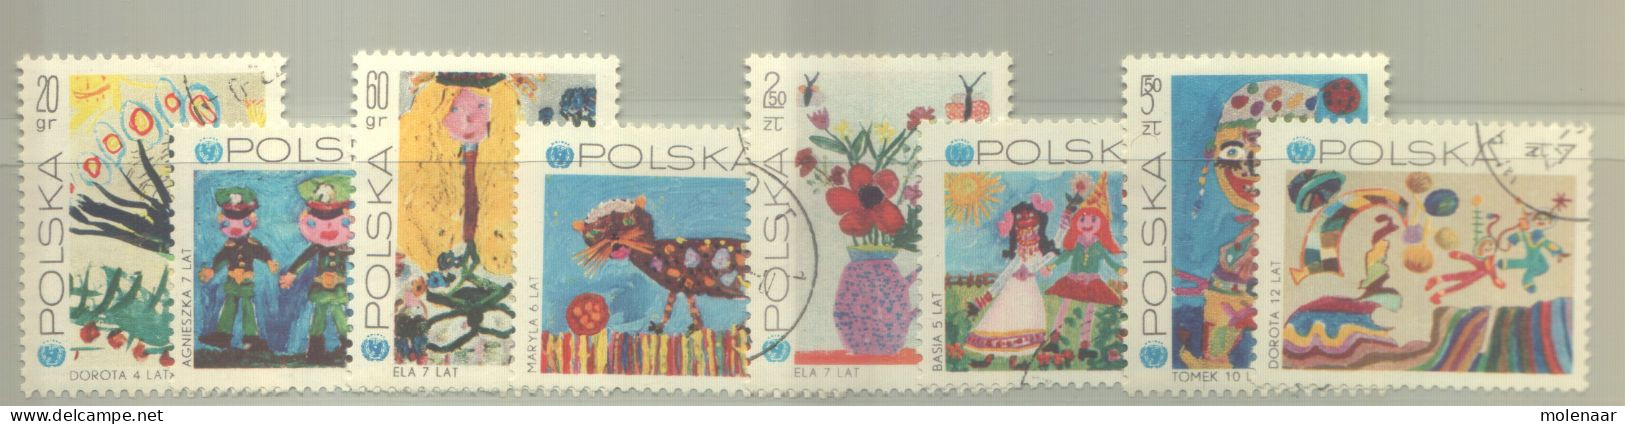 Postzegels > Europa > Polen > 1944-.... Republiek > 1981-90 > Gebruikt 2075-2082 (12193) - Usati